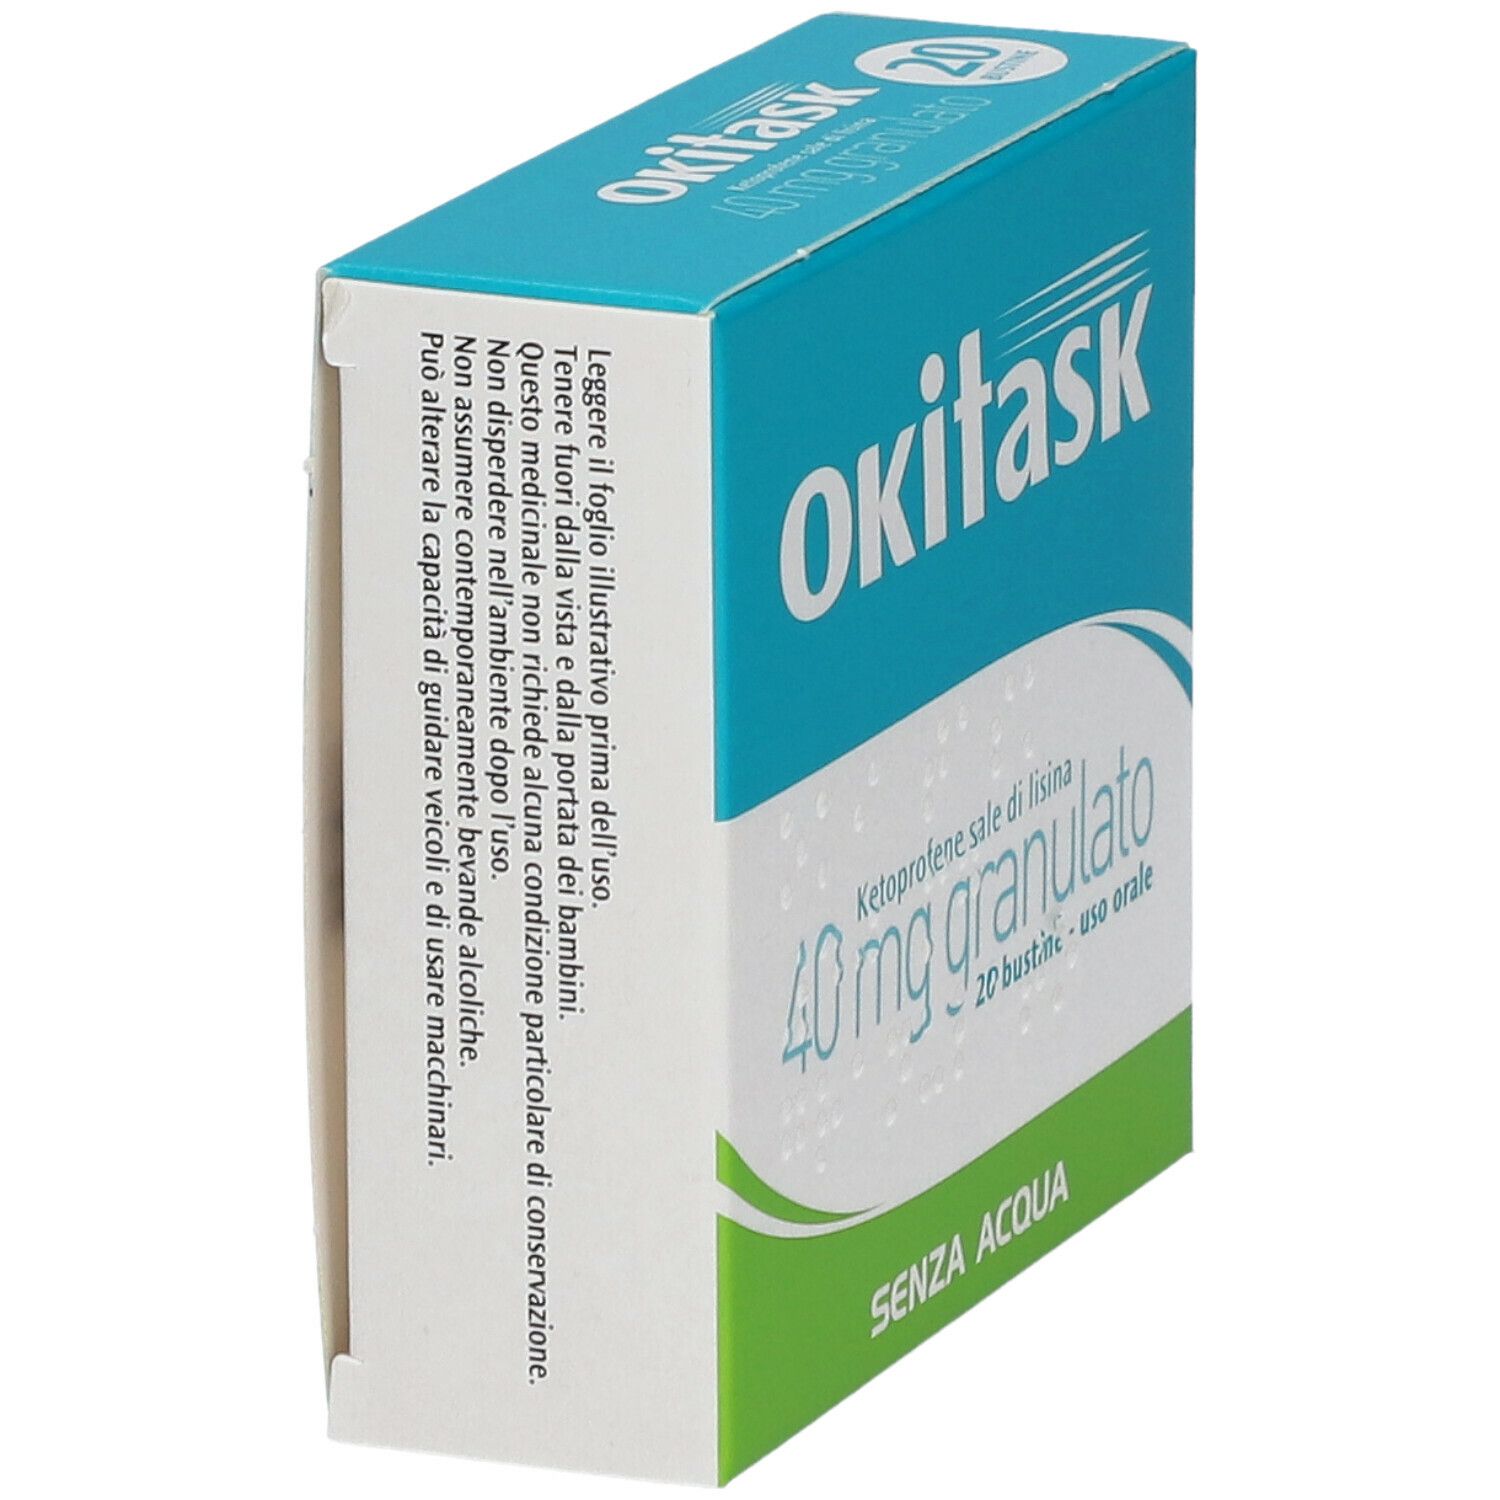 OKITASK® Granulato